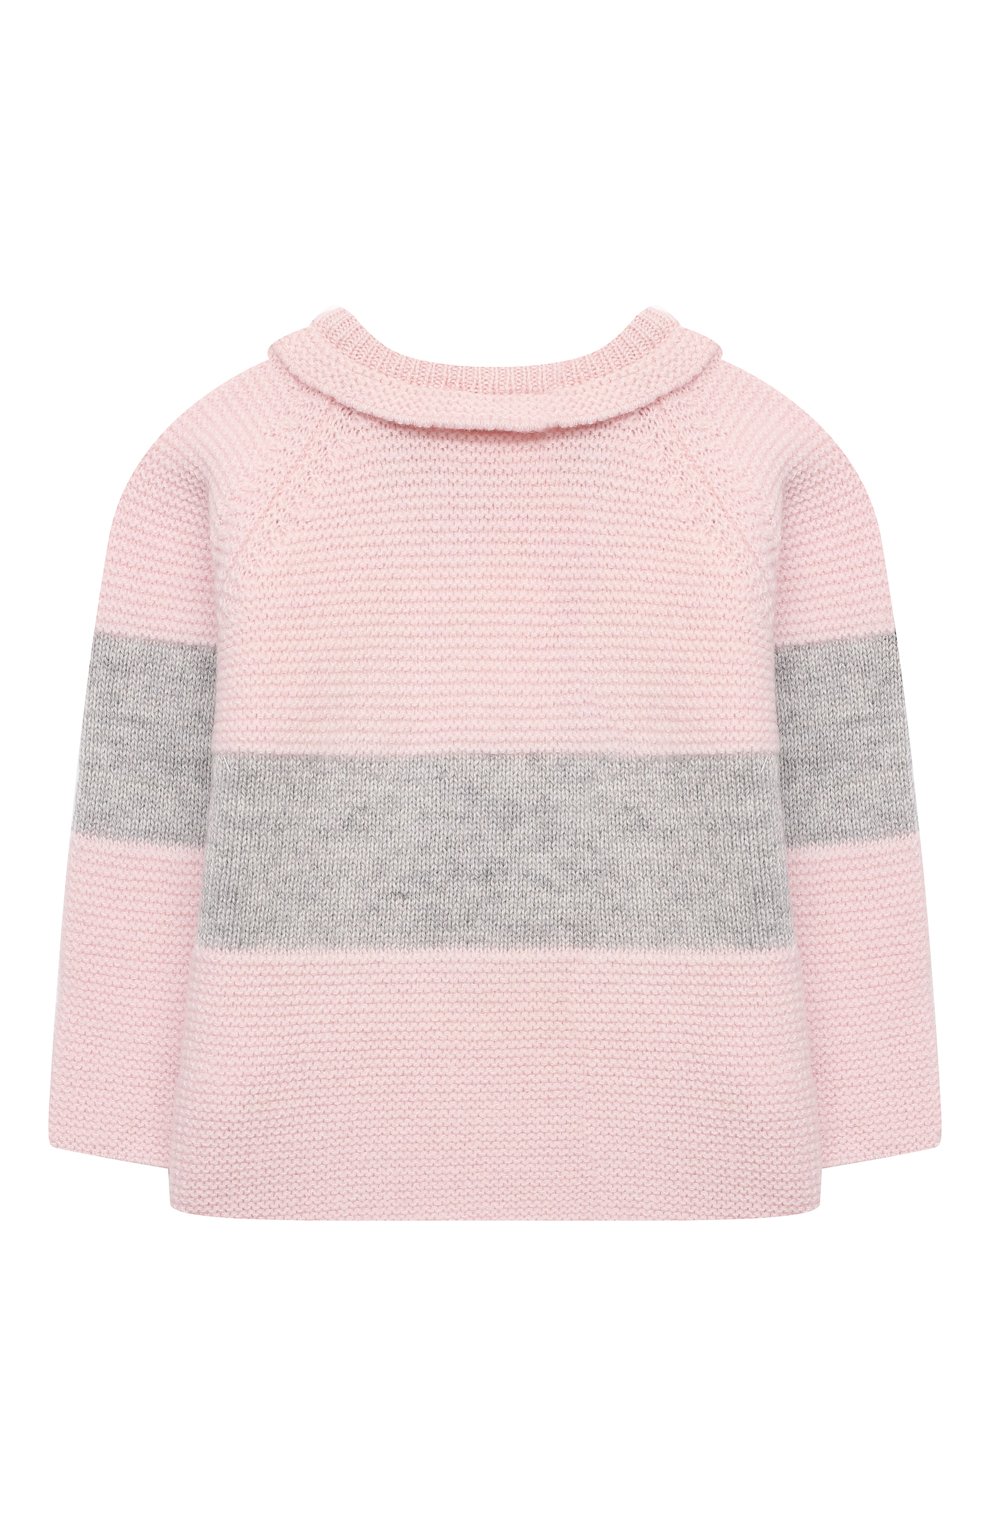 Детский комплект из пуловера и брюк BABY T розового цвета, арт. 21AI150C/18M-3A | Фото 3 (Кросс-КТ НВ: Костюм; Материал внешний: Шерсть; Рукава: Длинные)